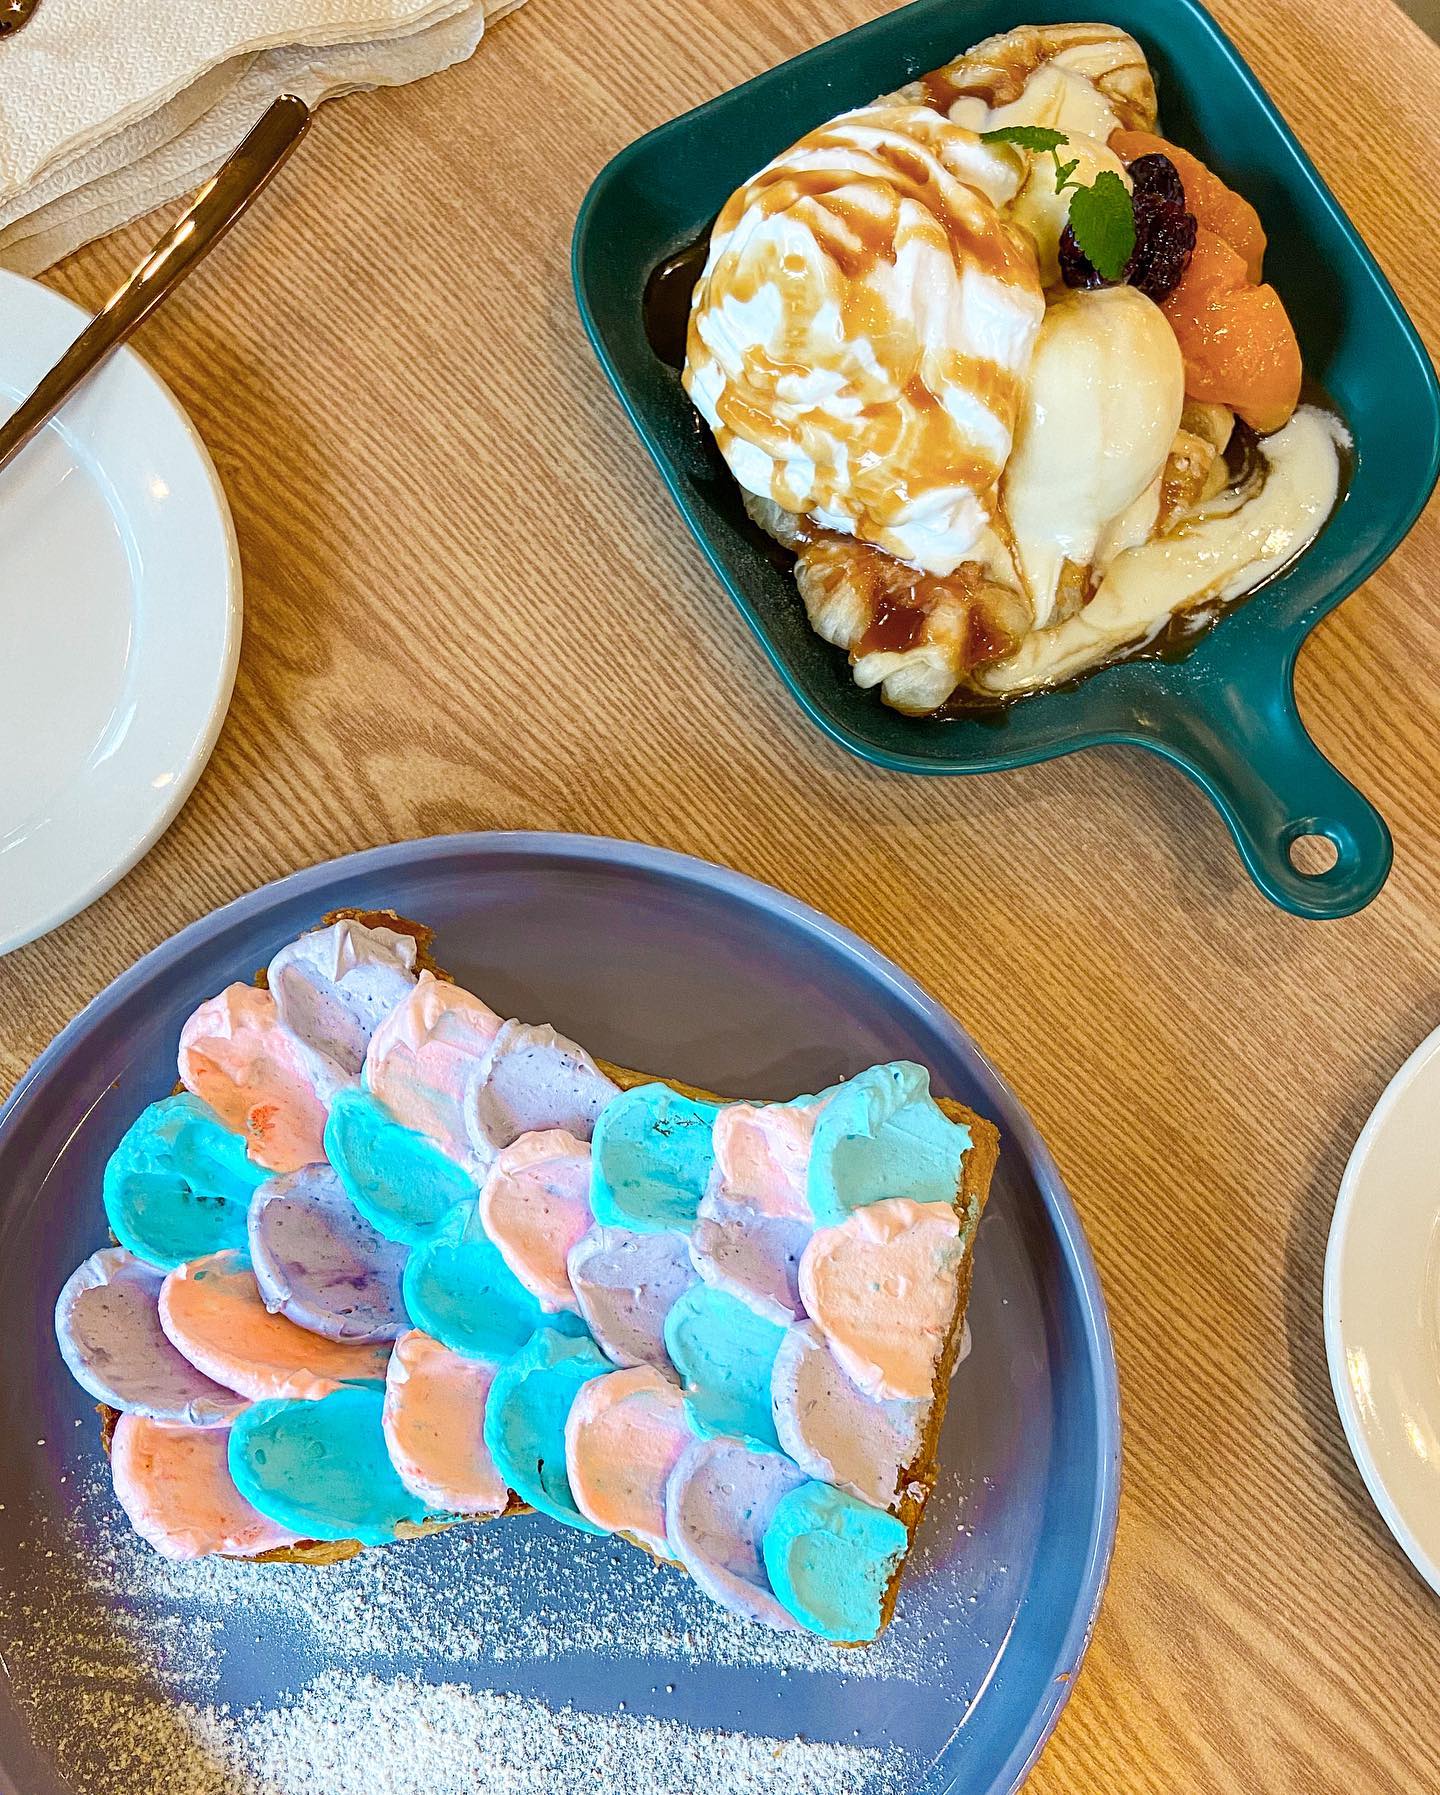 Seollem Cafe - Mermaid Toast and Fruits & Cream Toast